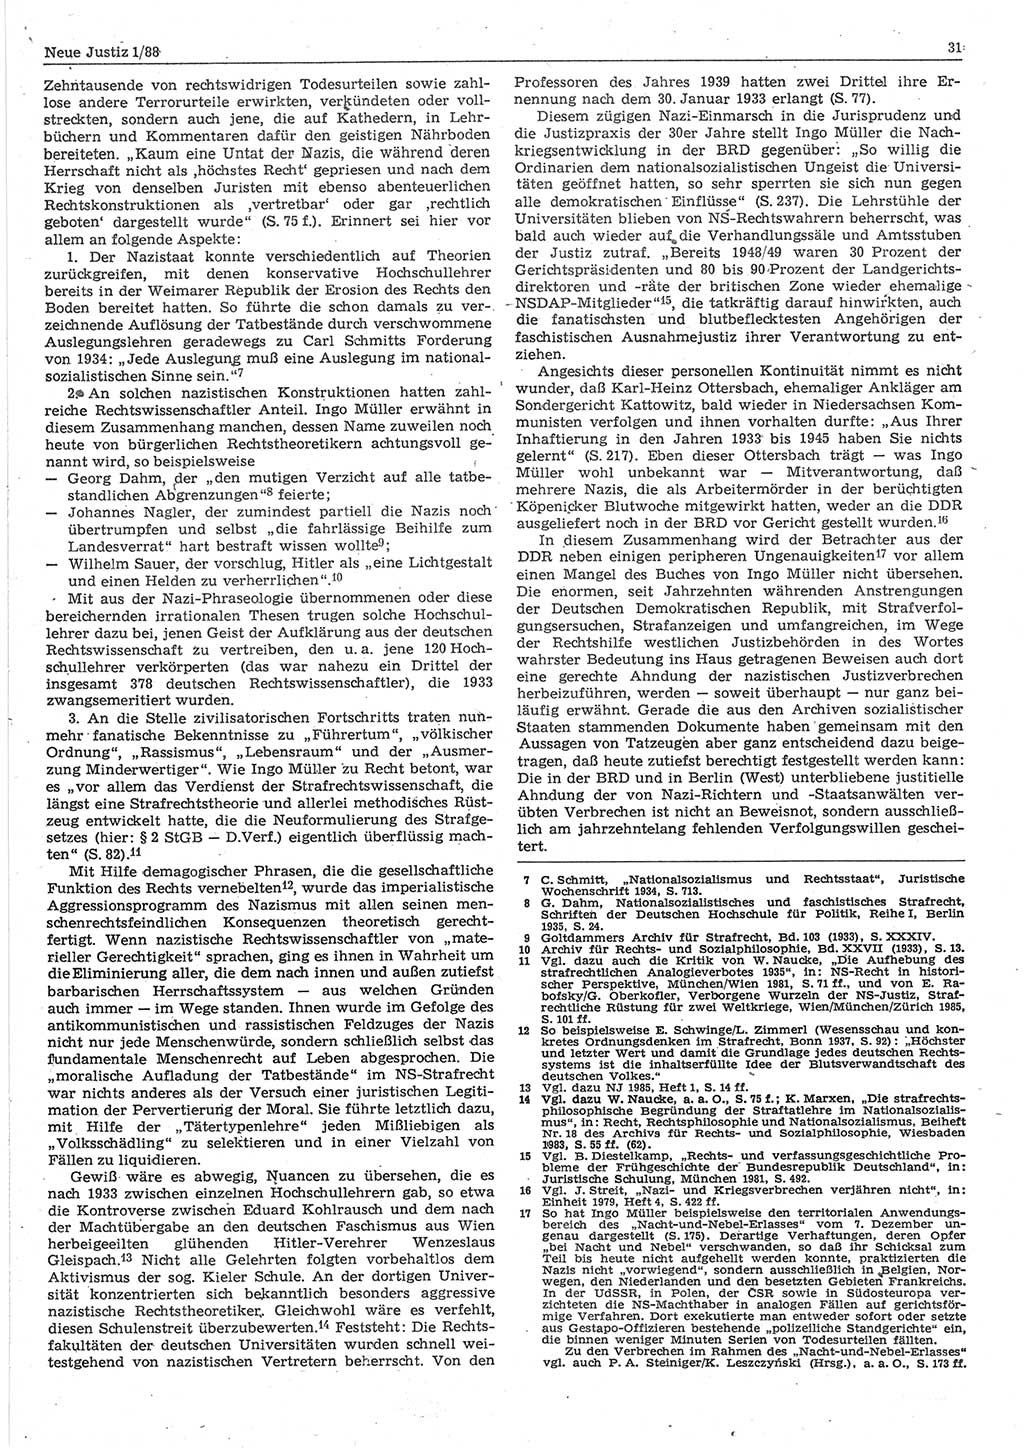 Neue Justiz (NJ), Zeitschrift für sozialistisches Recht und Gesetzlichkeit [Deutsche Demokratische Republik (DDR)], 42. Jahrgang 1988, Seite 31 (NJ DDR 1988, S. 31)